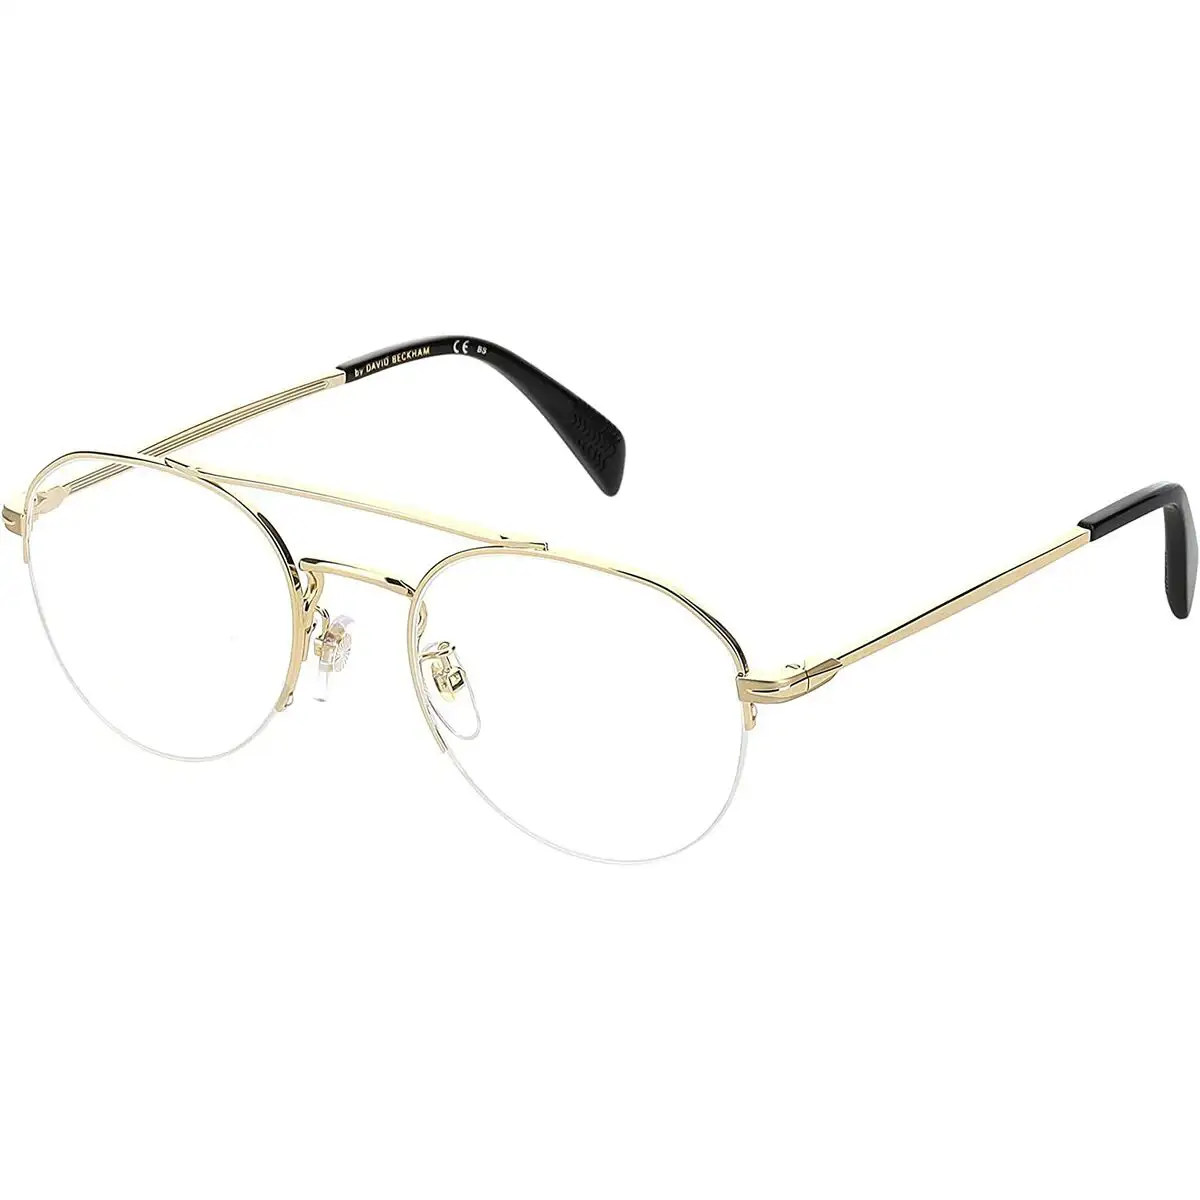 Monture de lunettes homme david beckham db 7014_6961. DIAYTAR SENEGAL - Votre Destination Shopping de Choix. Explorez notre boutique en ligne et découvrez des trésors qui reflètent votre style et votre passion pour l'authenticité.